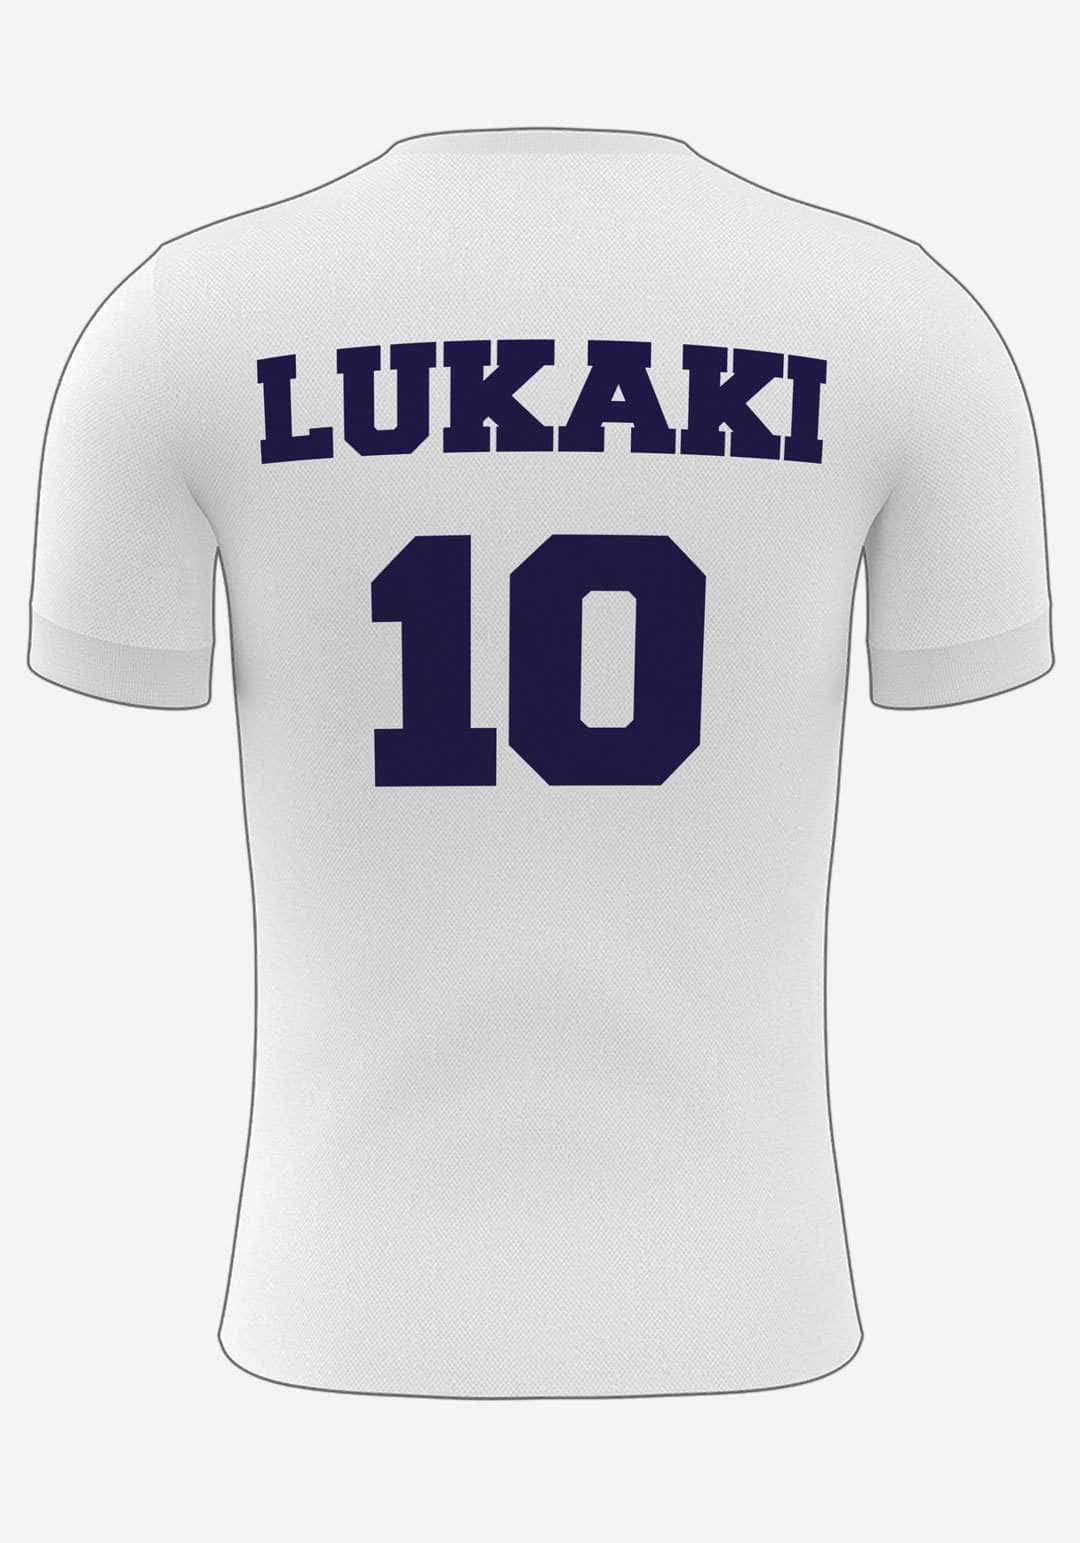 Se Tottenham Fodboldplakat - med eget navn og nummer, 50x70 hos Lukaki.dk